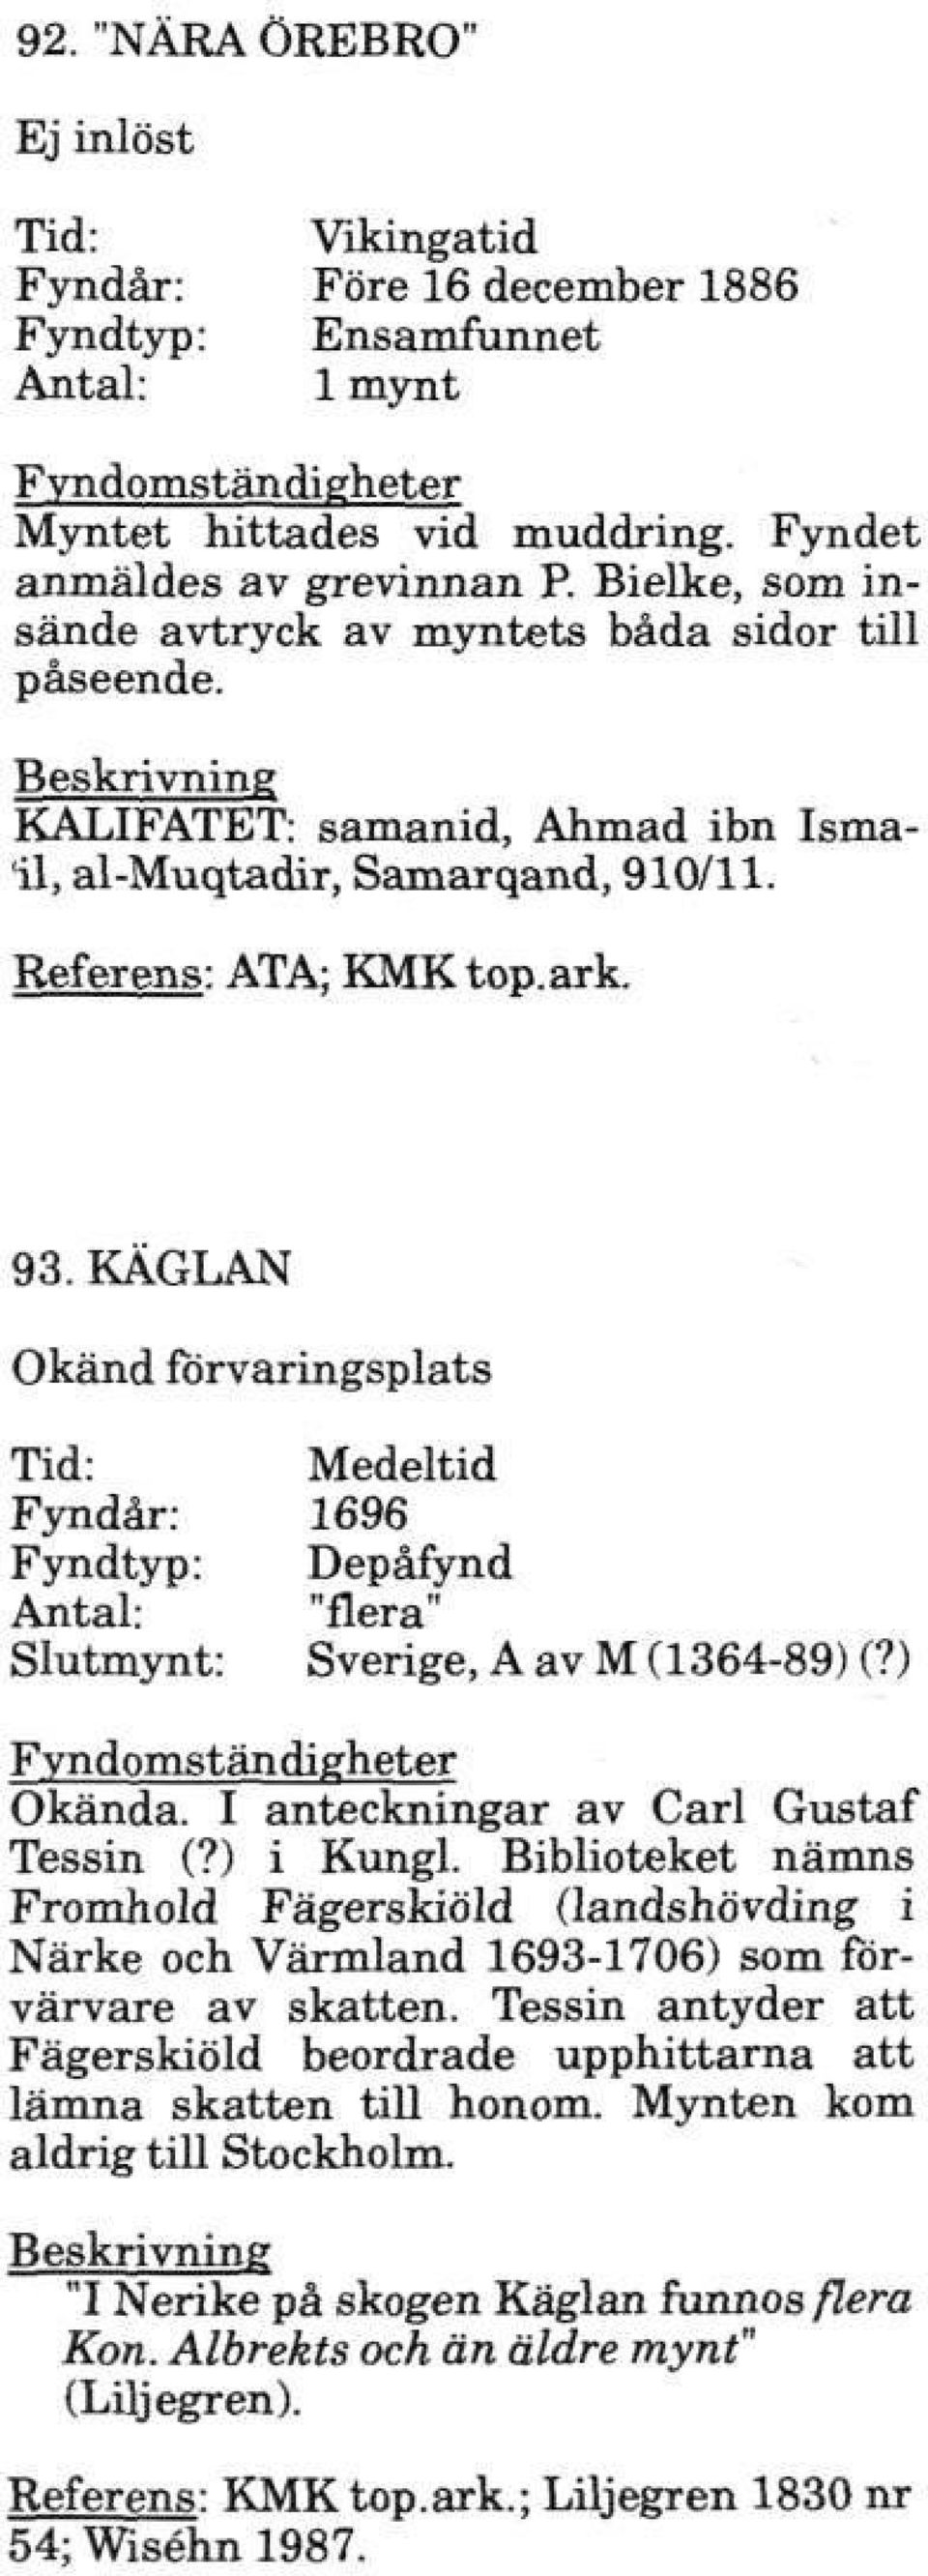 KÄGLAN Tid: Medeltid Fyndår: 1696 Fyndtyp: Depåfynd Antal: "flera" Slutmynt: Sverige, A av M (1364-89) (?) Fyndomständigheter Okända. I anteckningar av Carl Gustaf Tessin (?) i Kungl.